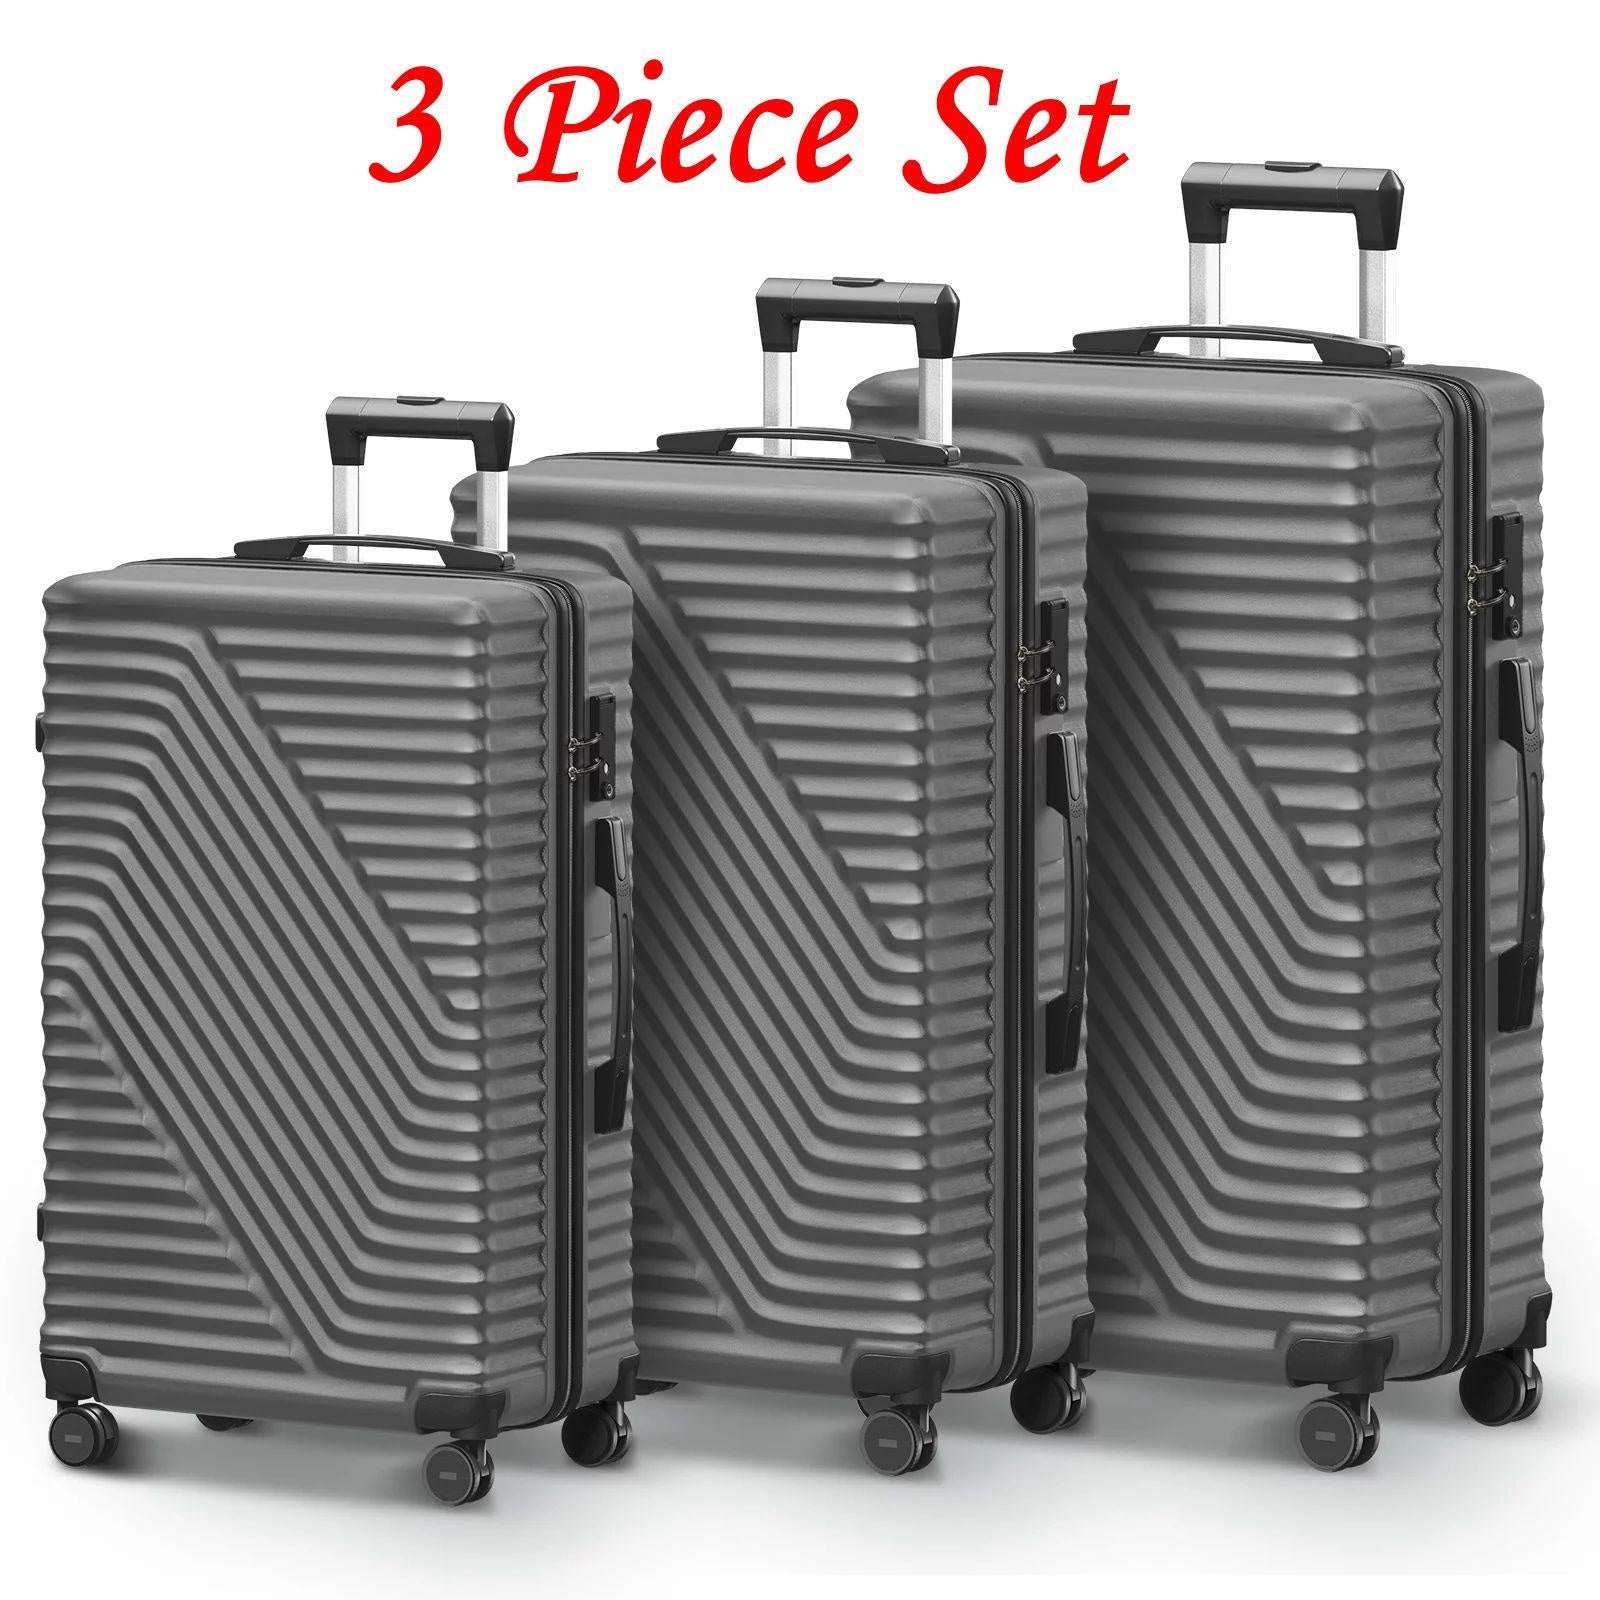 Luggage 3 Piece Set, 20" 24" 28", Dark Gray - Bargainwizz